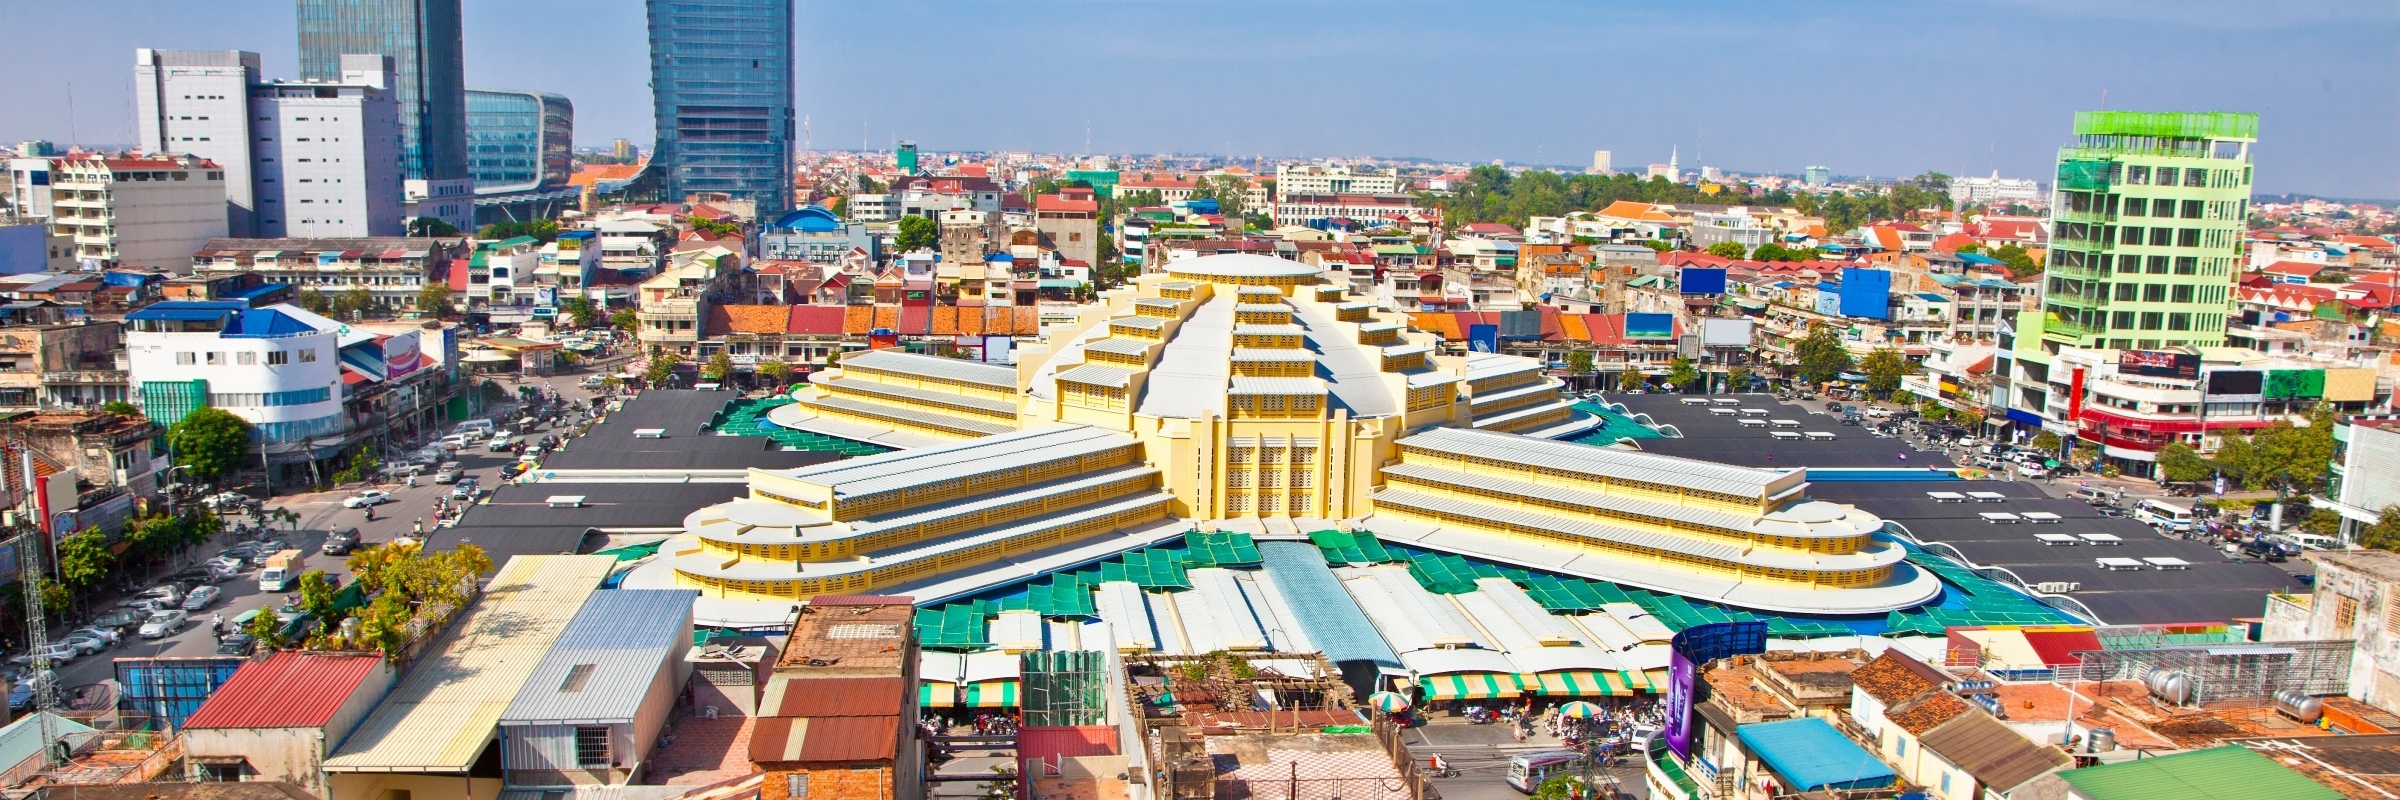 Cẩm Nang Du Lịch Phnom Penh - Cambodia Tự Túc Chi Phí Tiết...